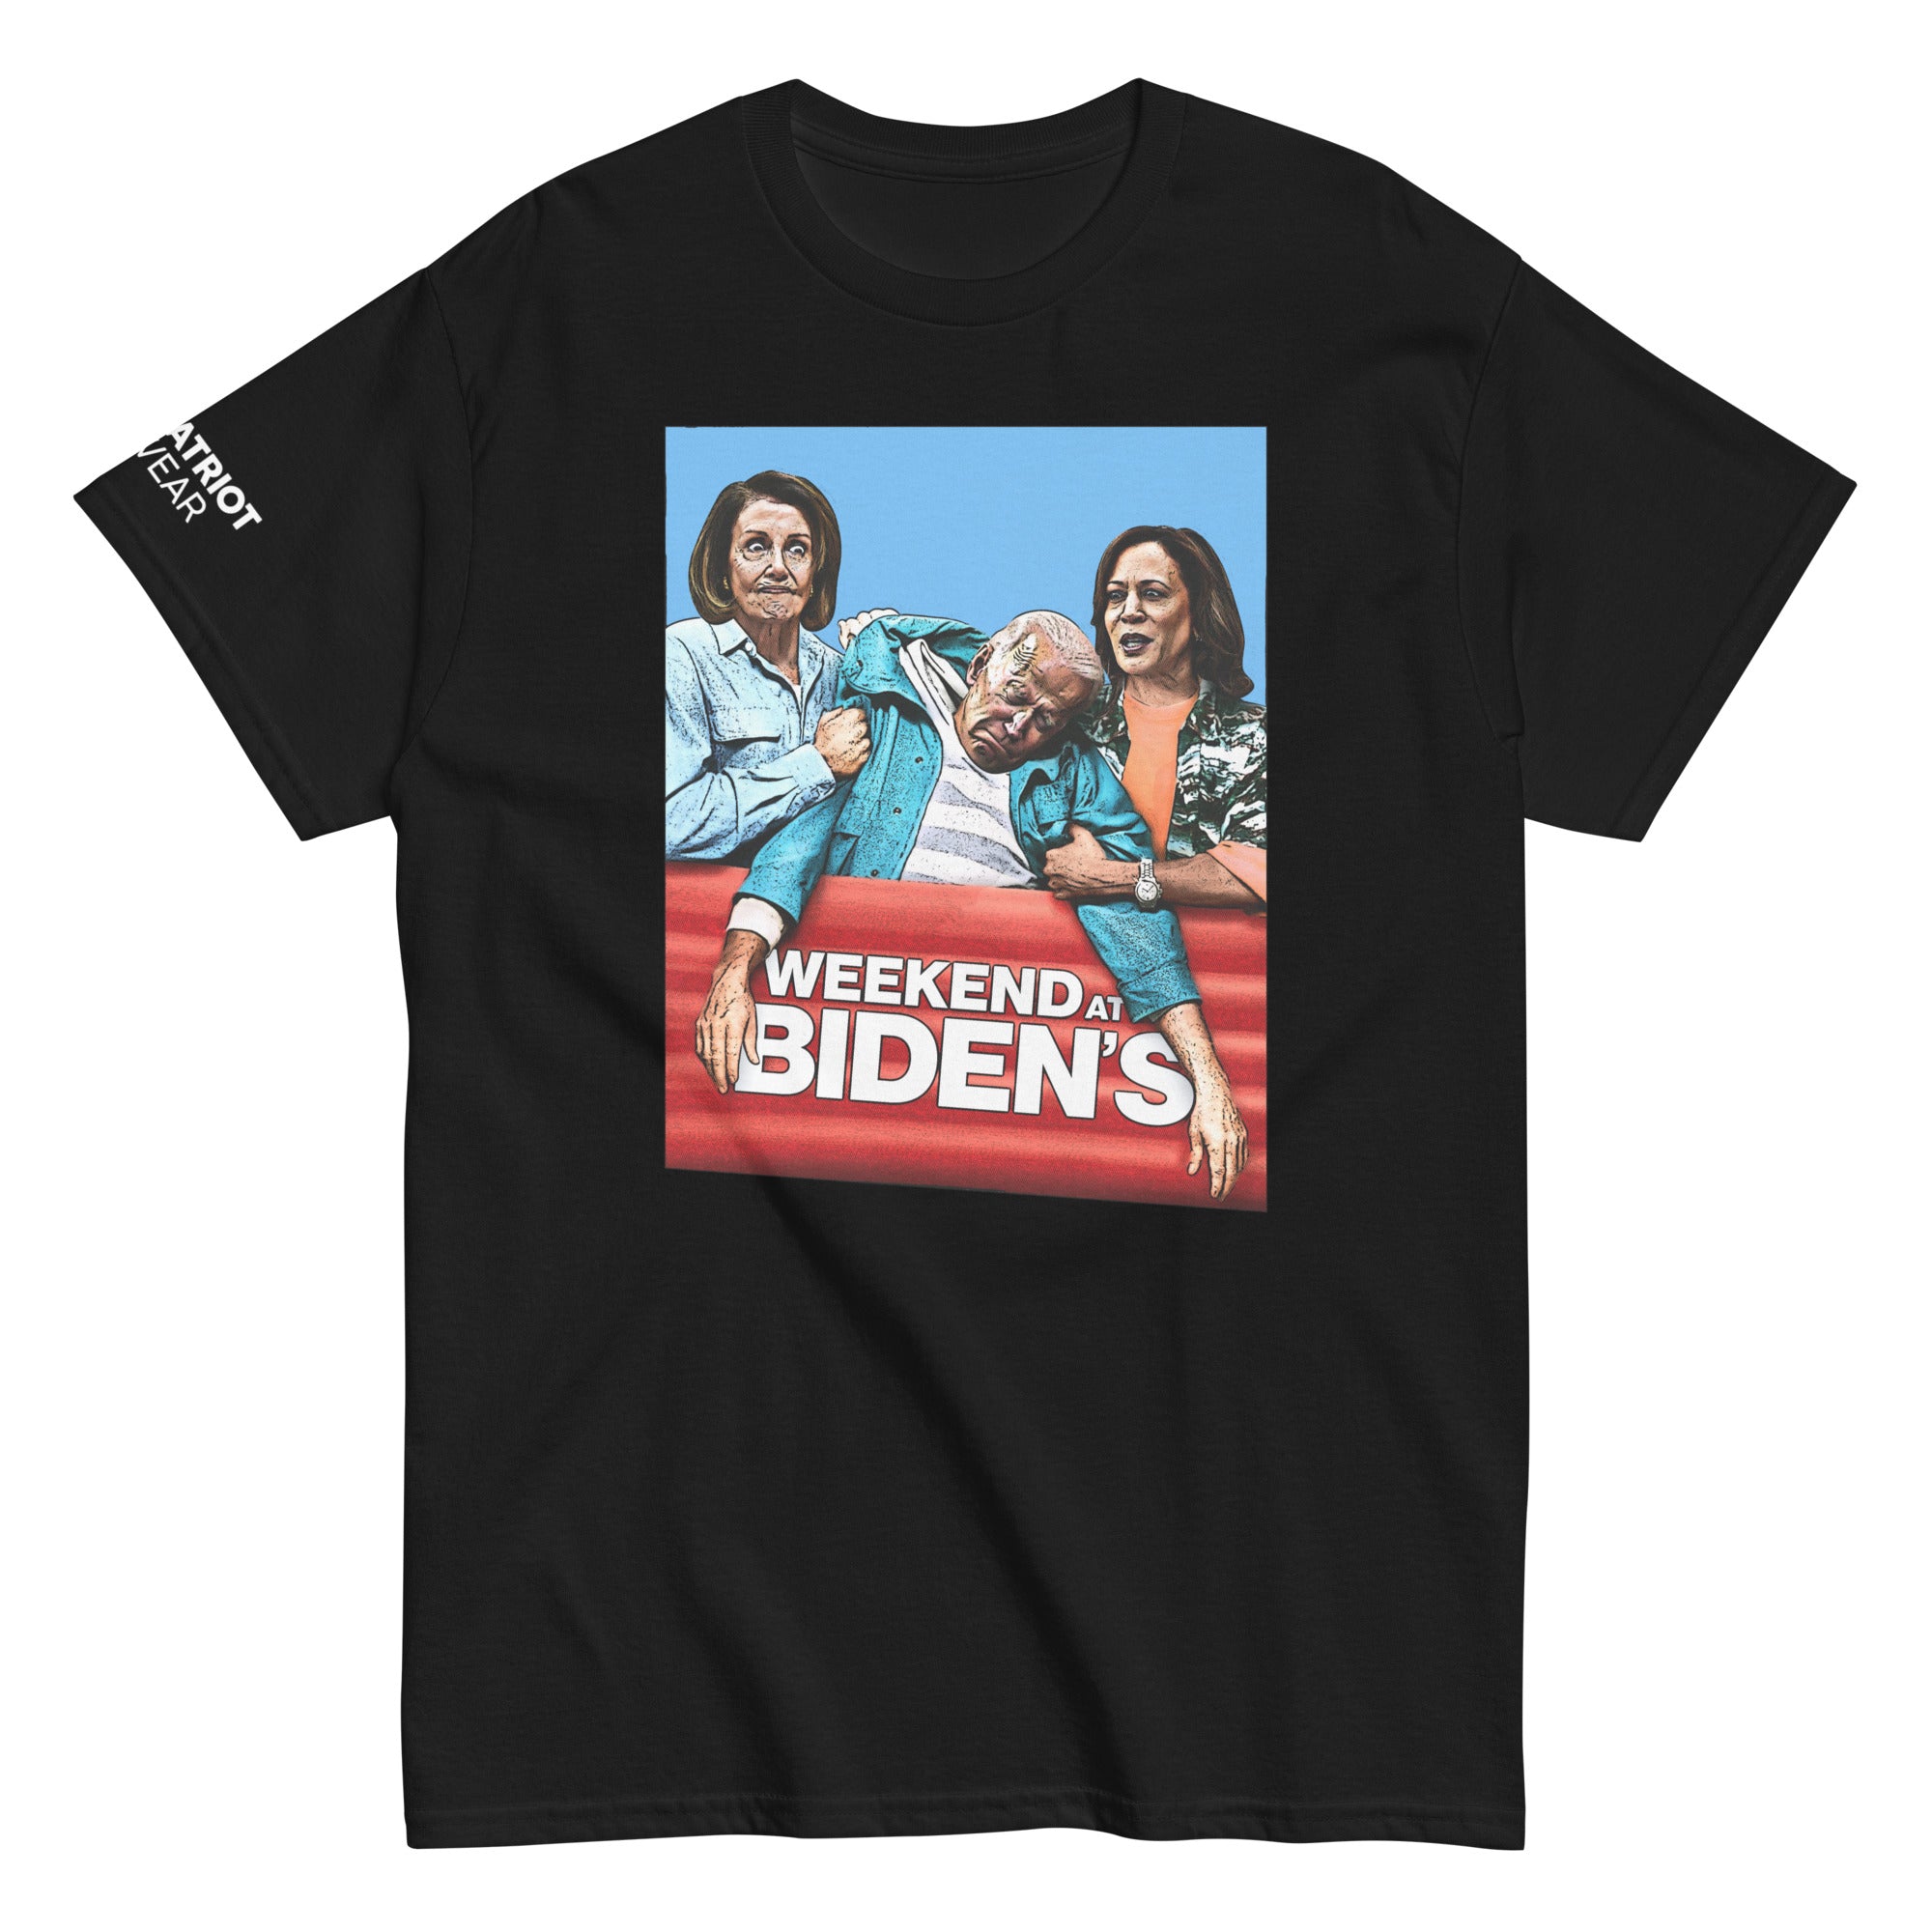 Weekend at Biden’s Shirt